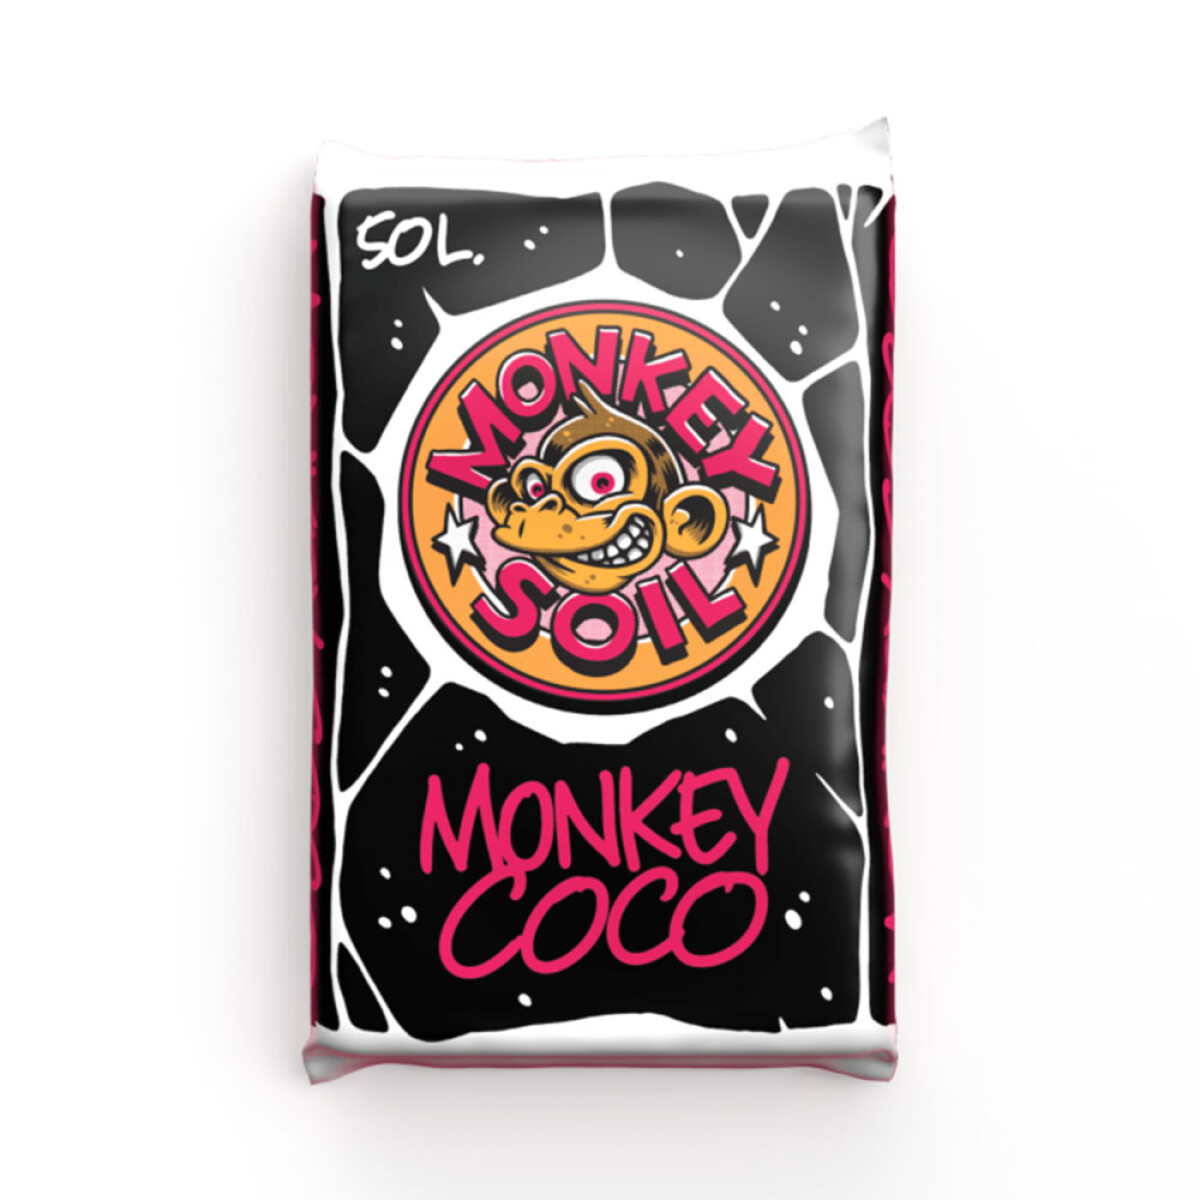 COCO MONKEY SOIL - 50L 